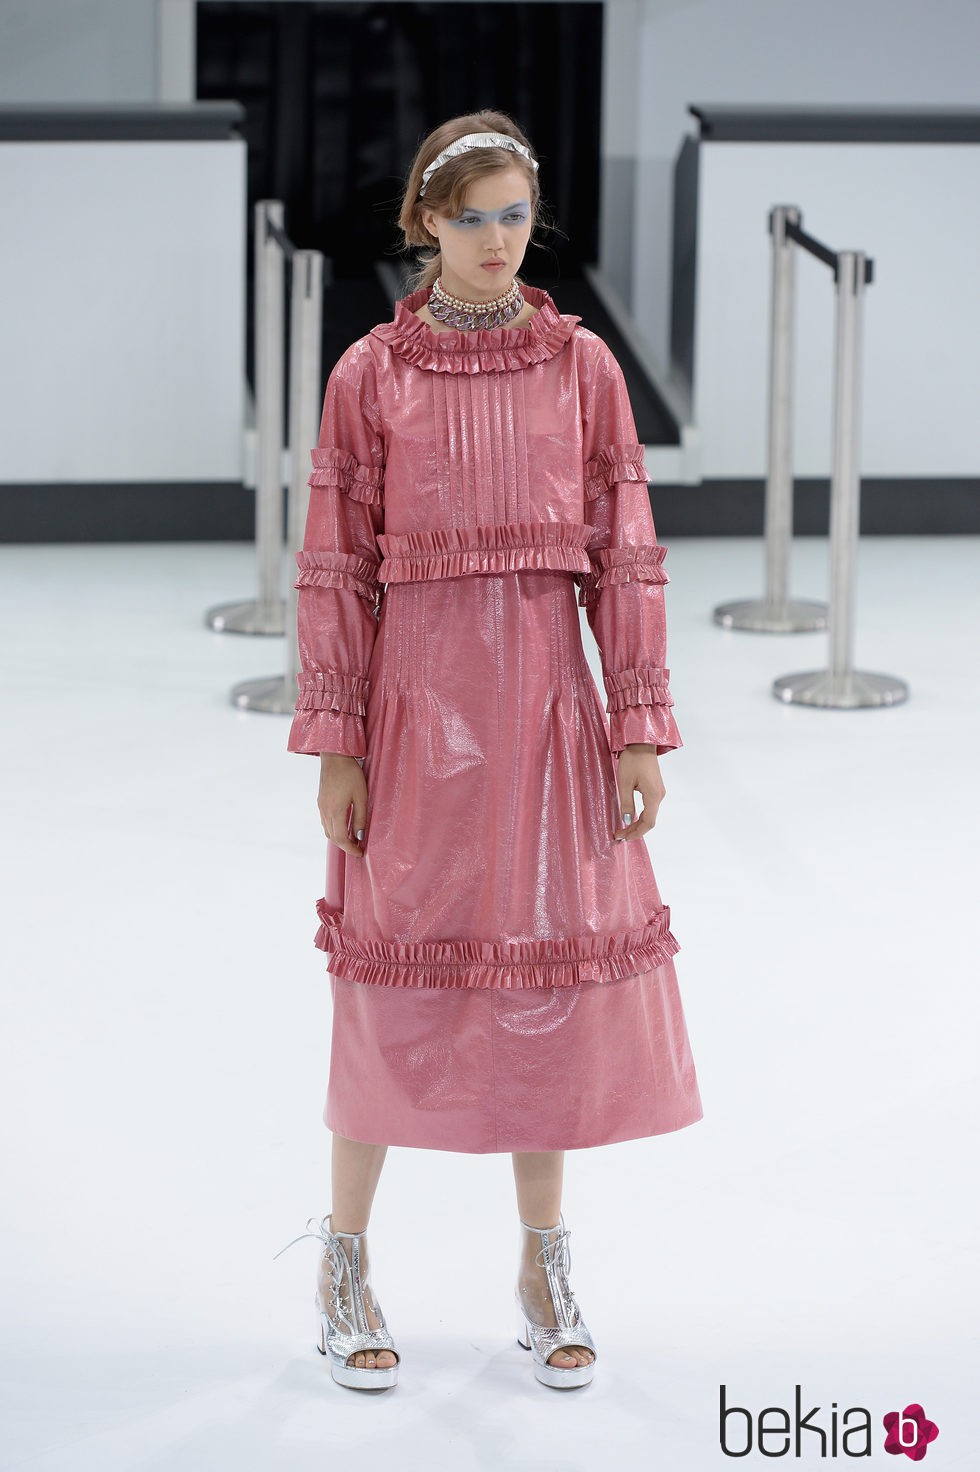 Vestido rosa de la nueva colección de Chanel primavera/verano 2016 en París Fashion Week